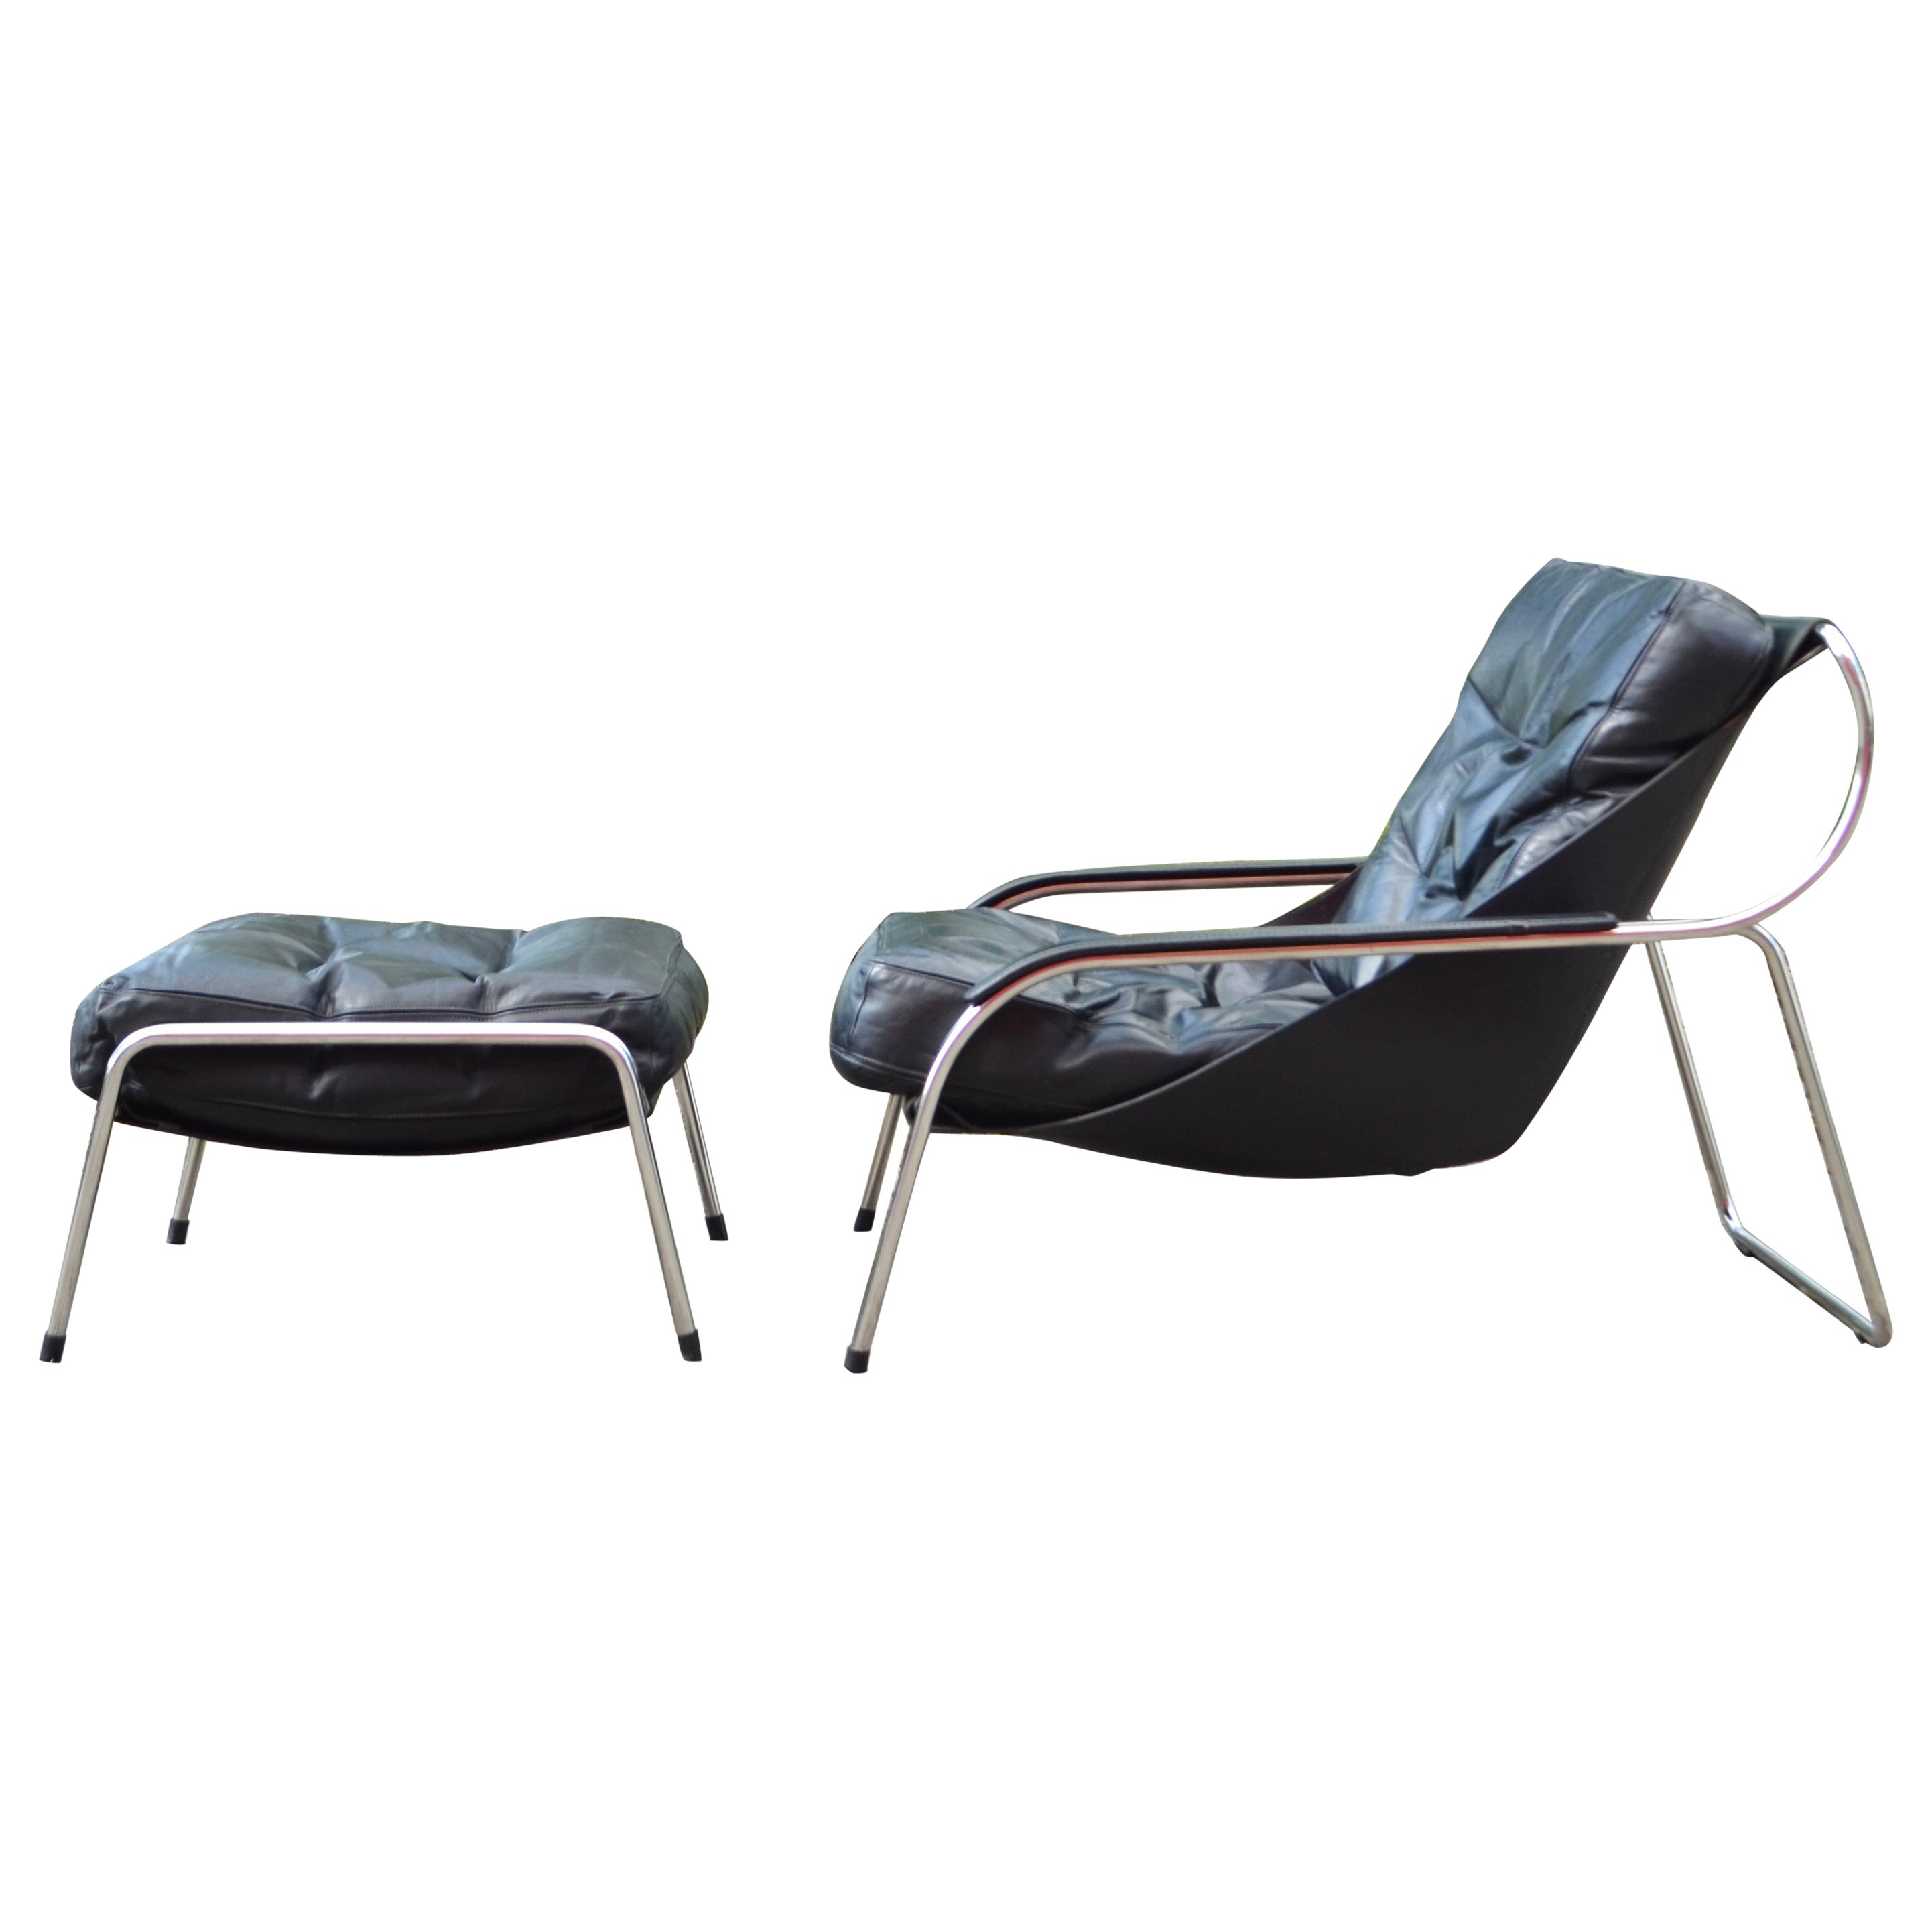 Zanotta Leather Lounge Chair Model Maggiolina Design 1947 by Marco Zanuso